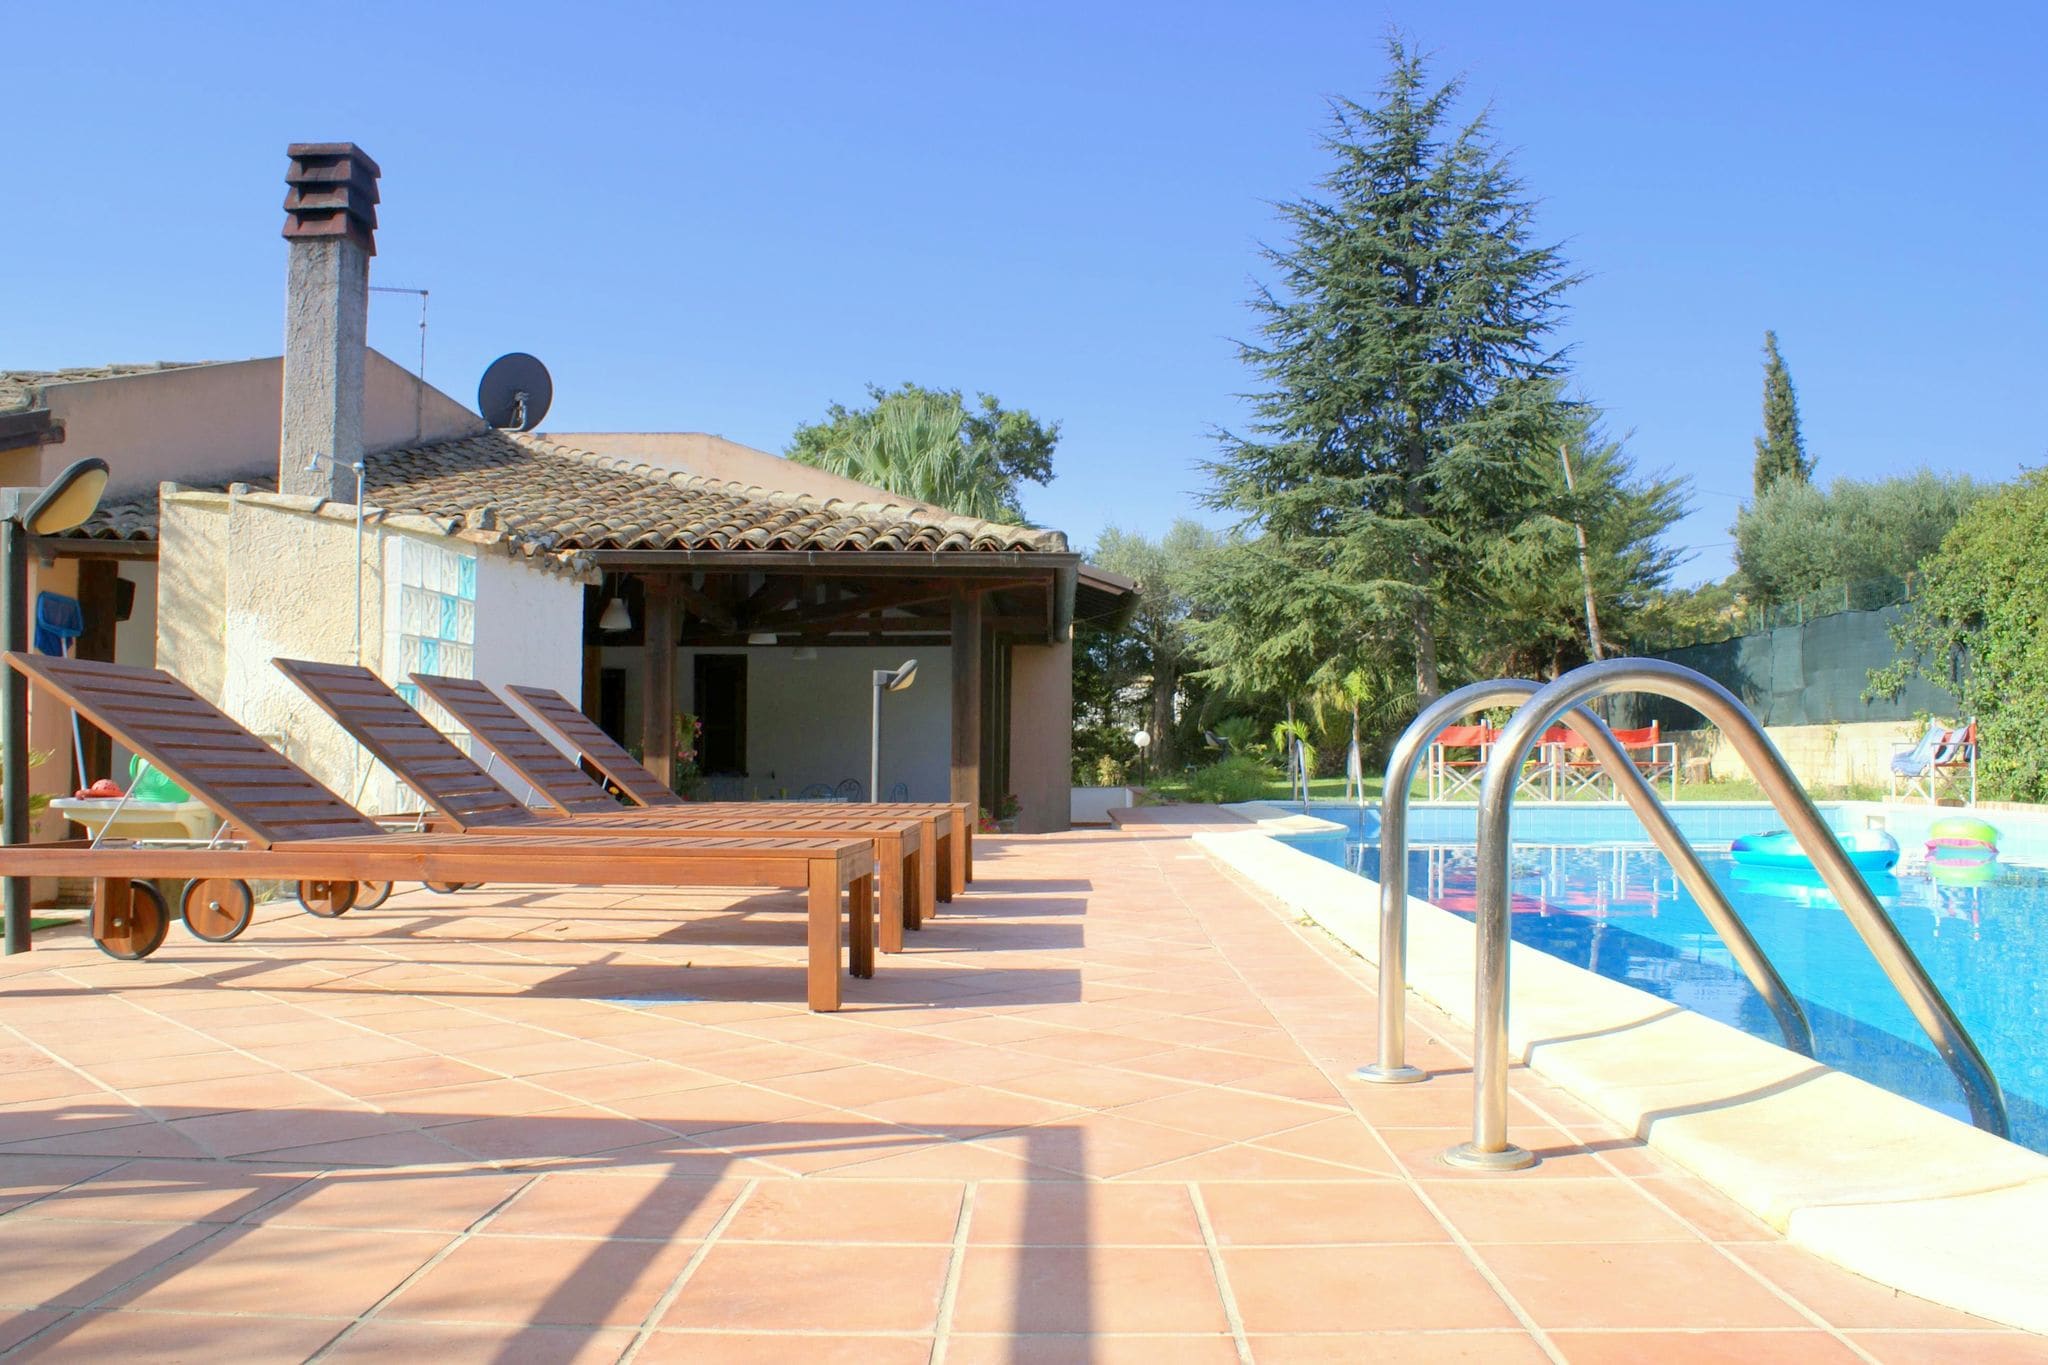 Luxe villa in Caltagirone, Italië met privézwembad